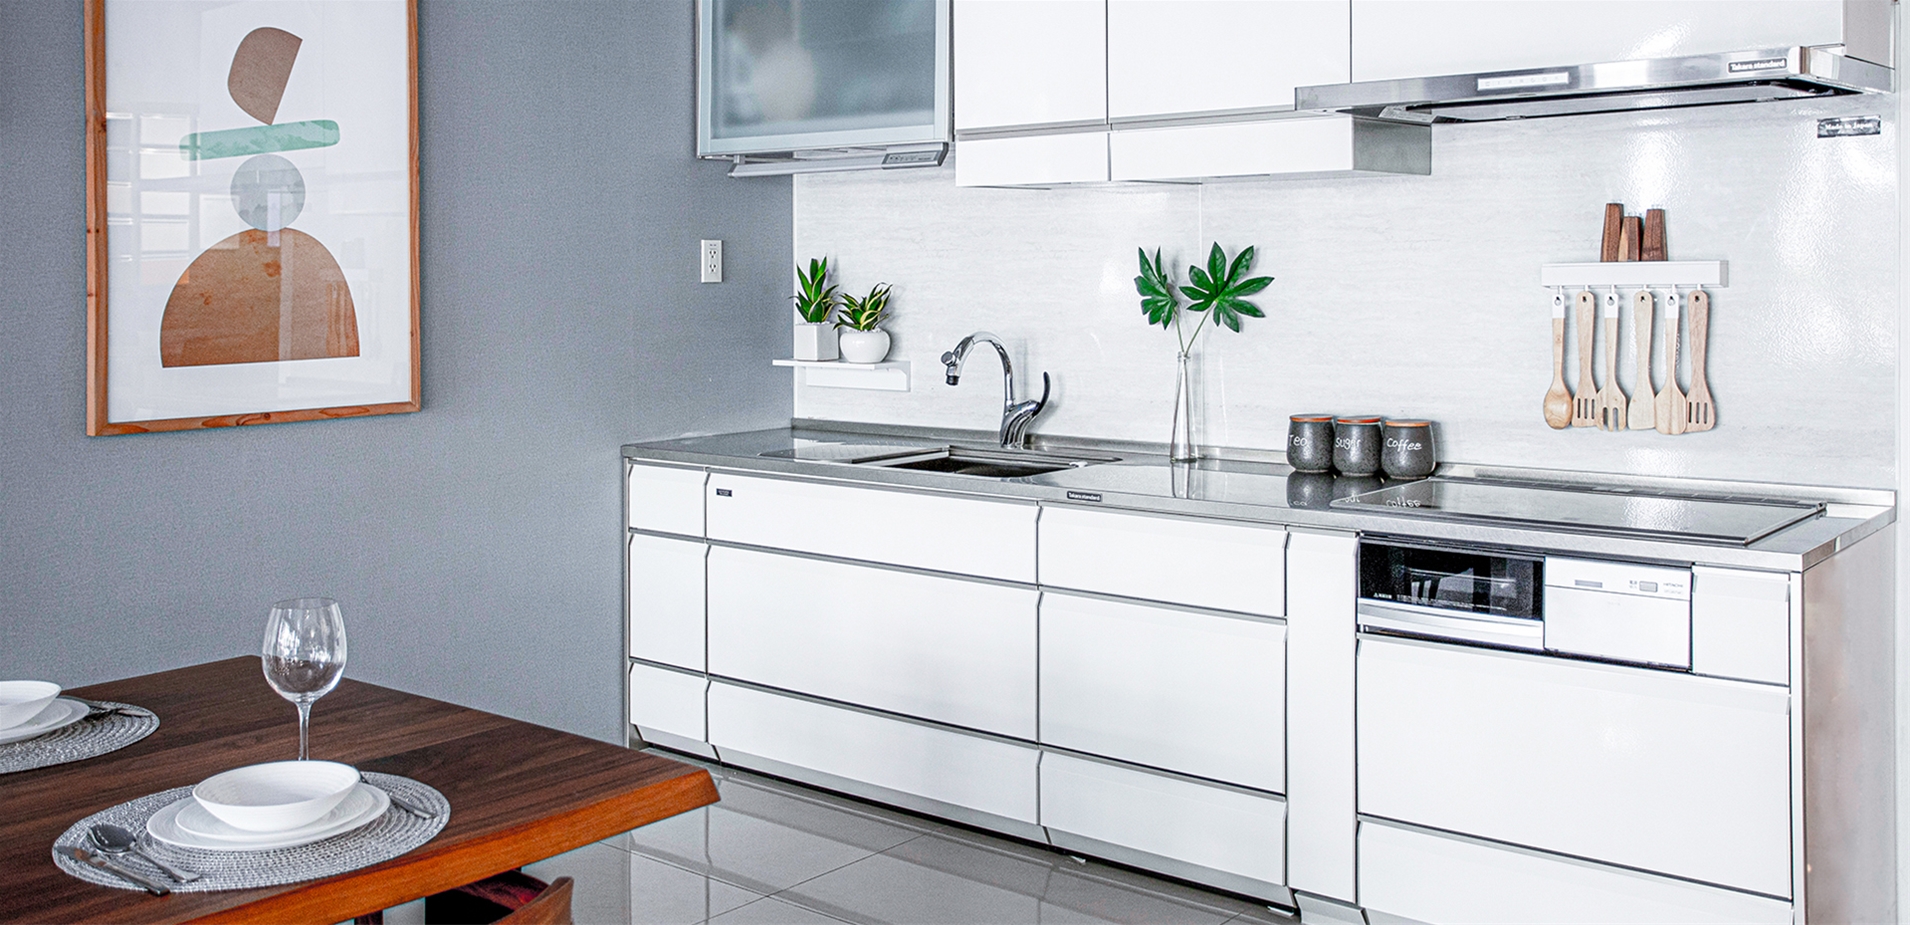 Tủ bếp Inox theo phong cách Minimalism Style, hệ tủ bếp Lemure cao cấp màu LSW